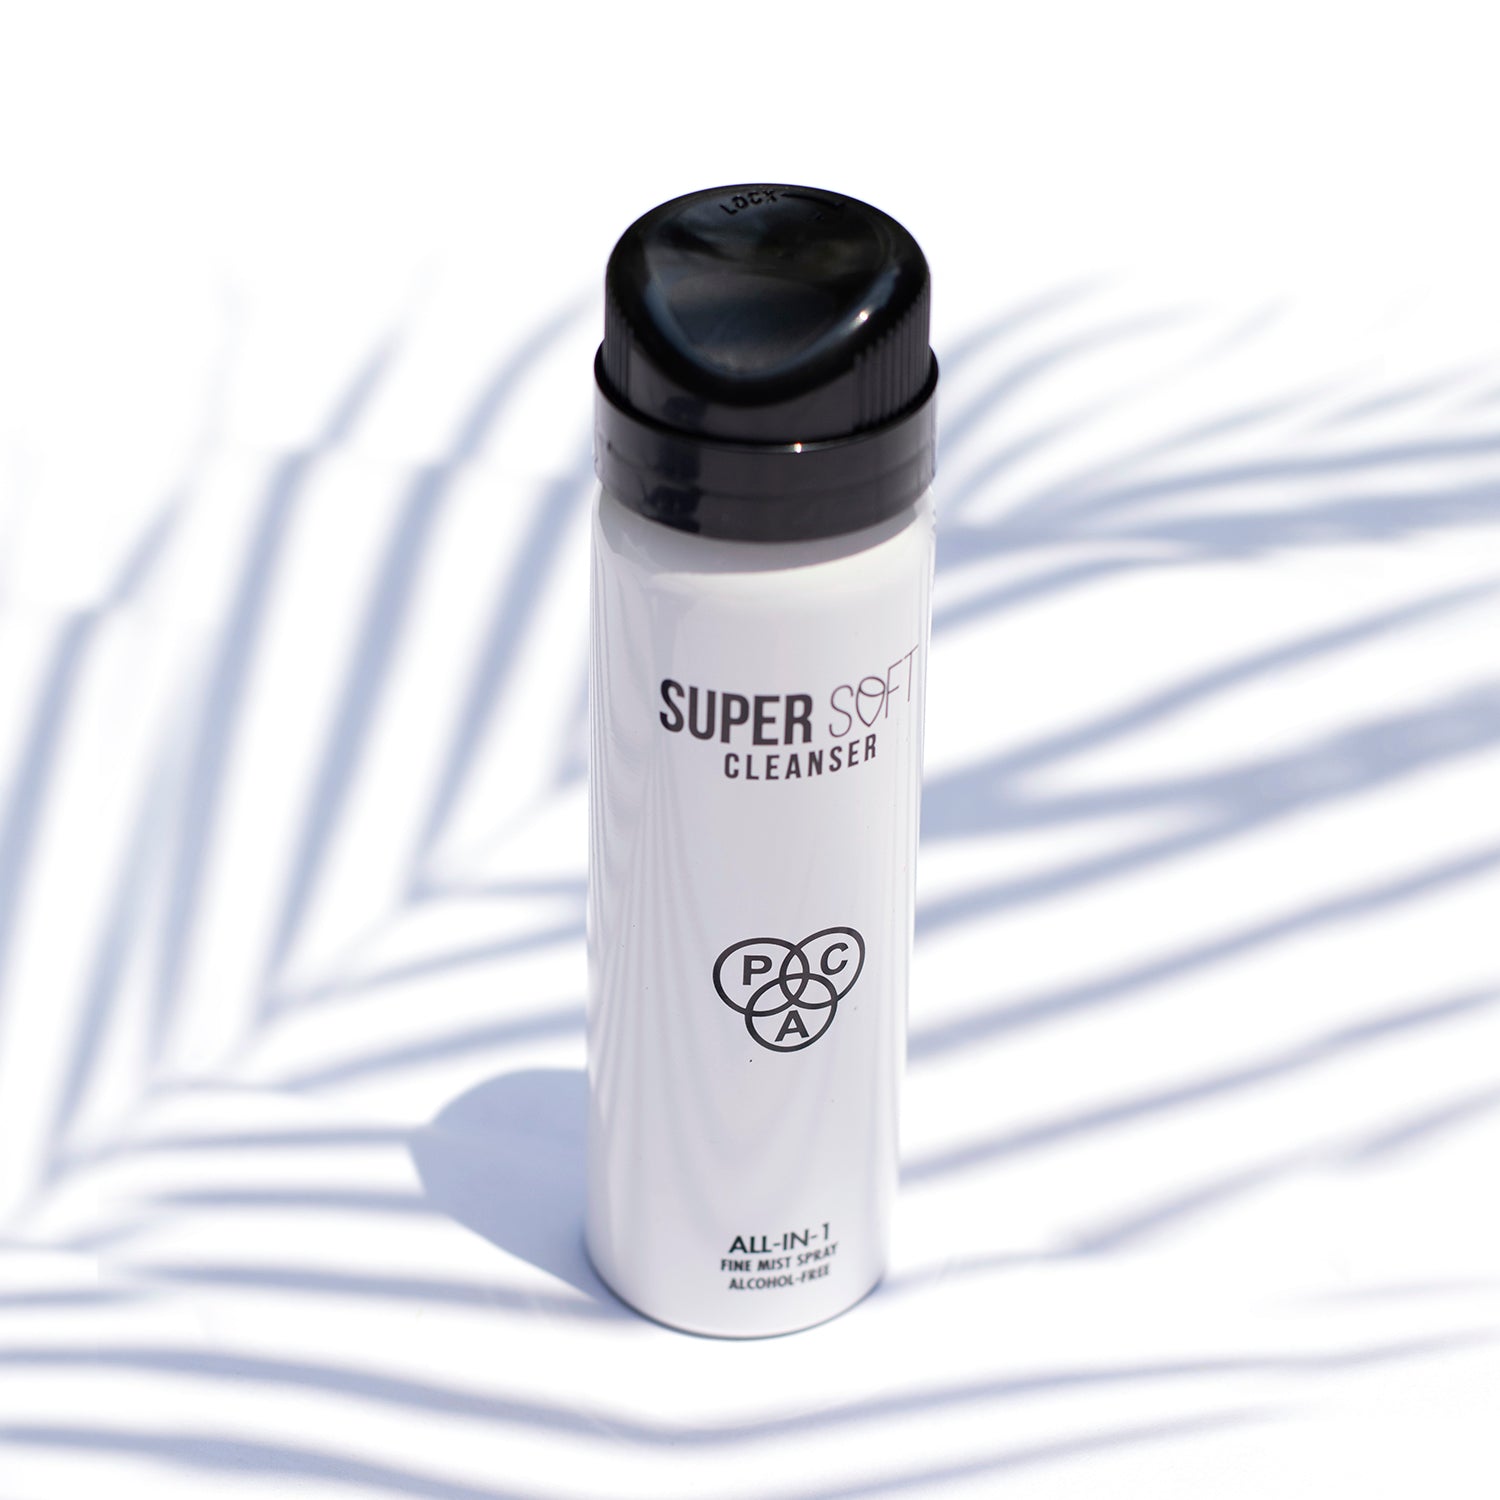 PAC Cosmetics Super Soft Cleanser (36 gm)